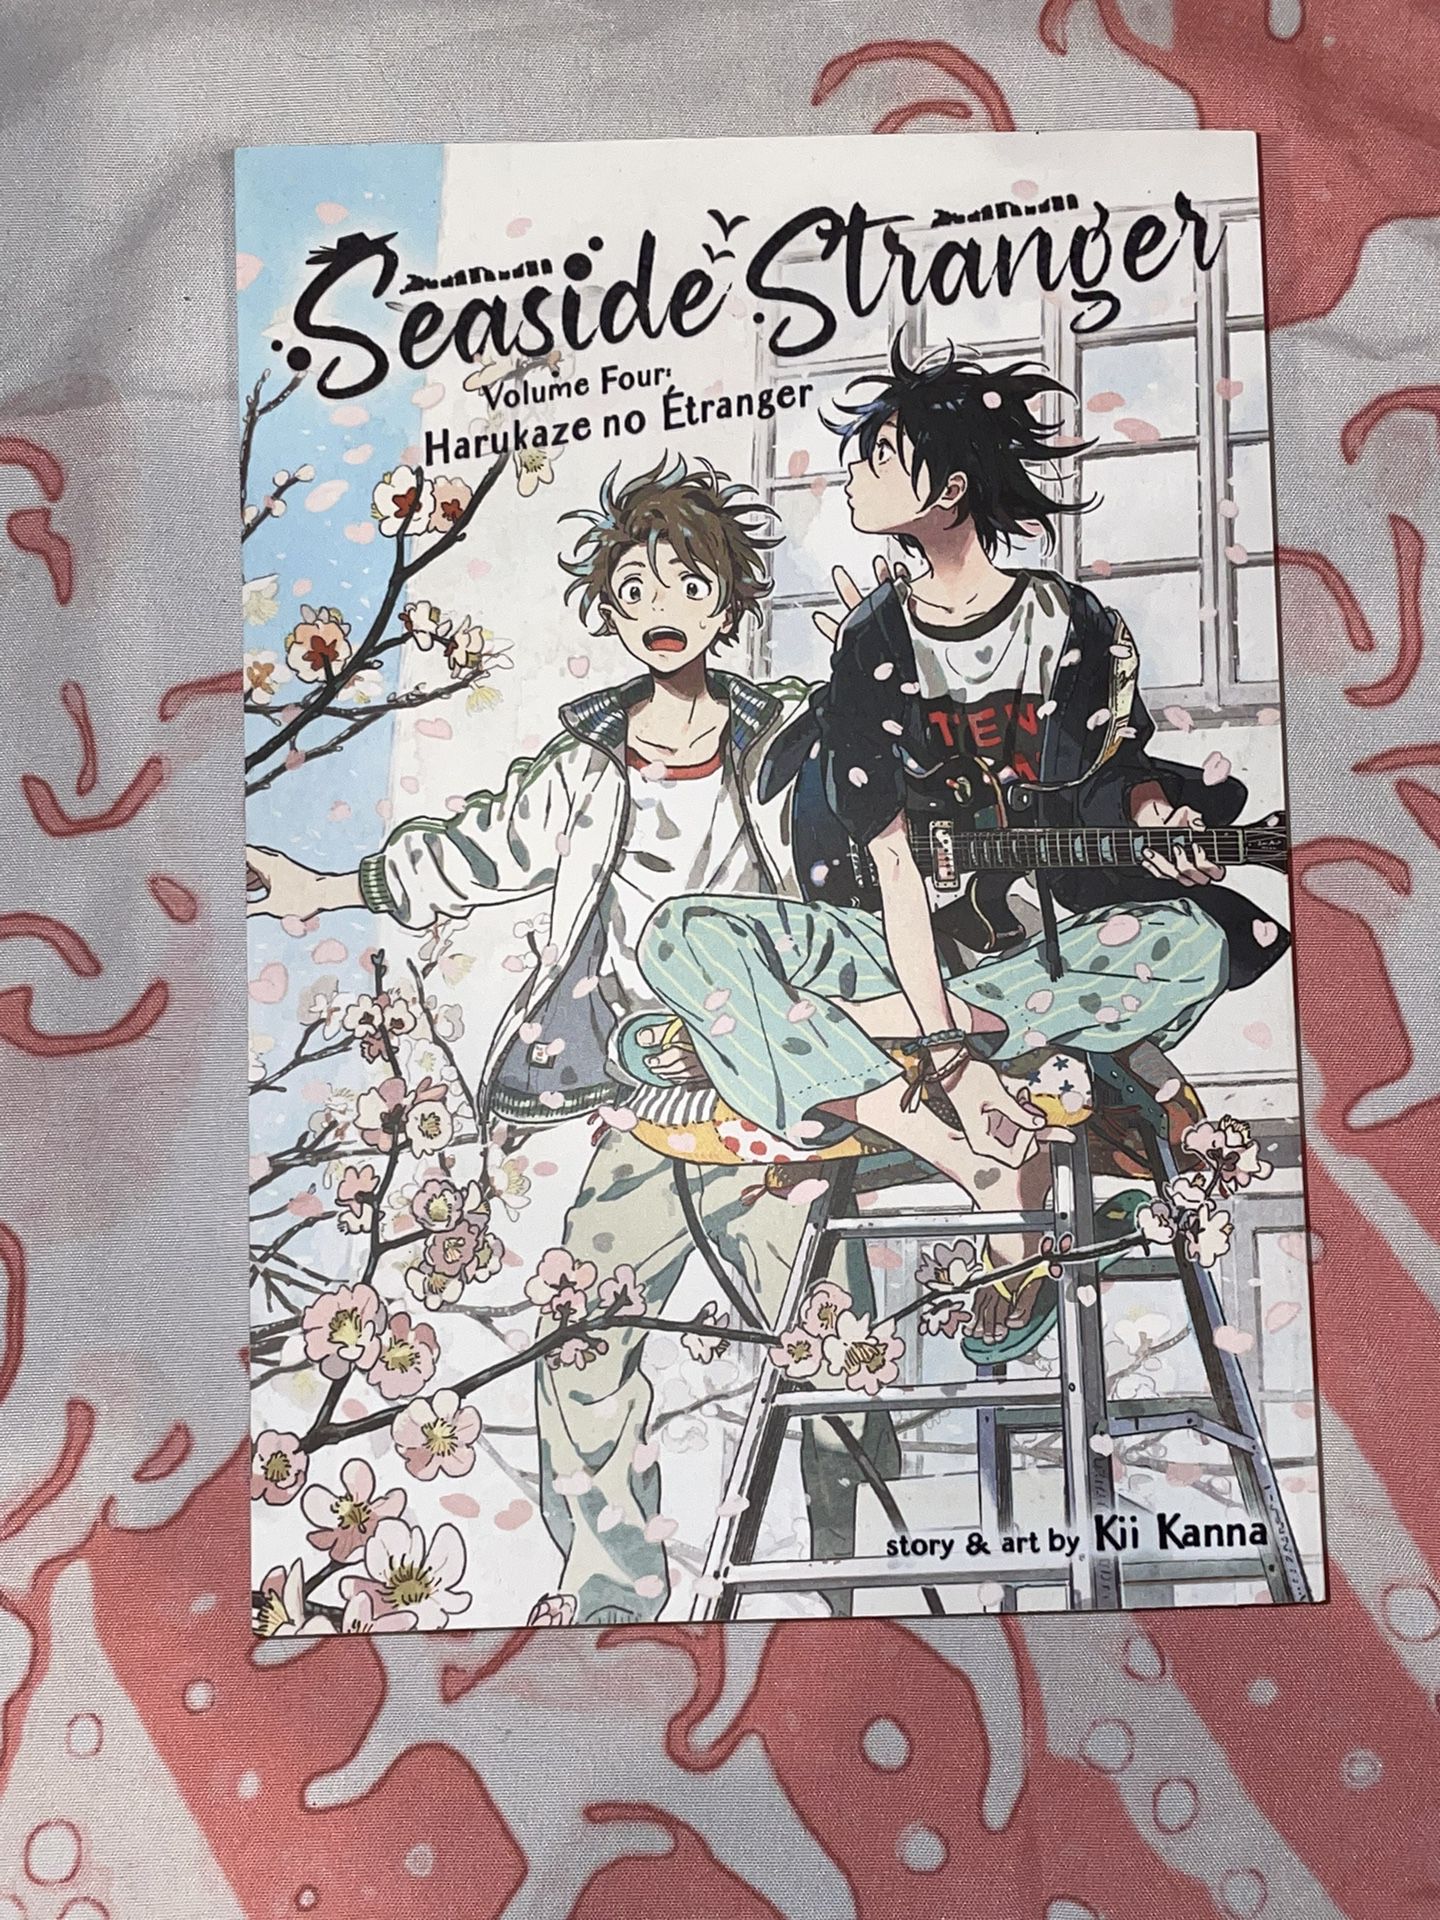 Seaside Stranger Manga Vol. 4, English